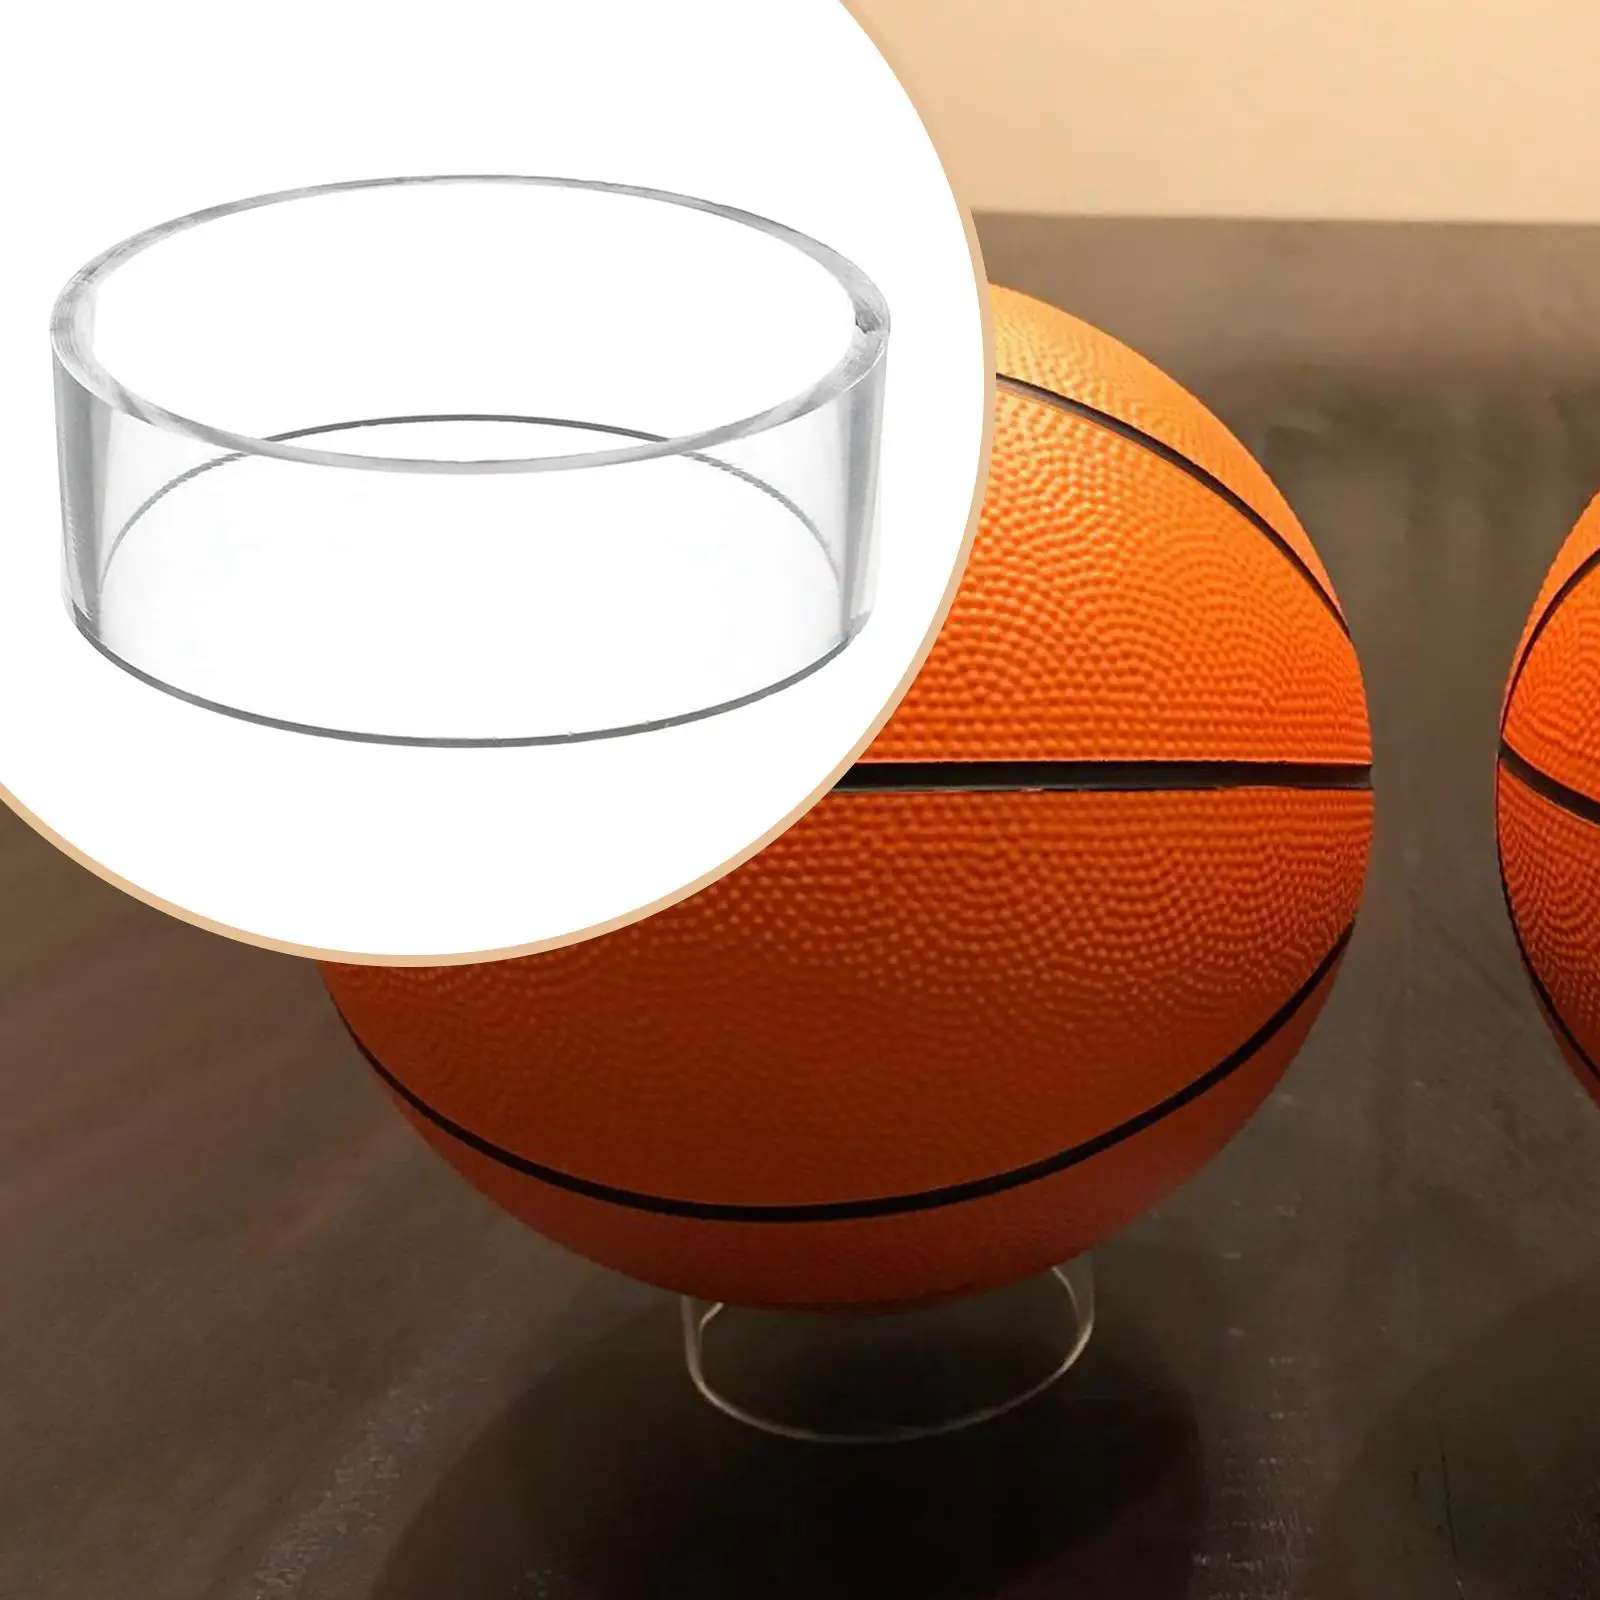 Acrylic Ball Display Holder Rack Pedestal for Basketball Bowling Baseball